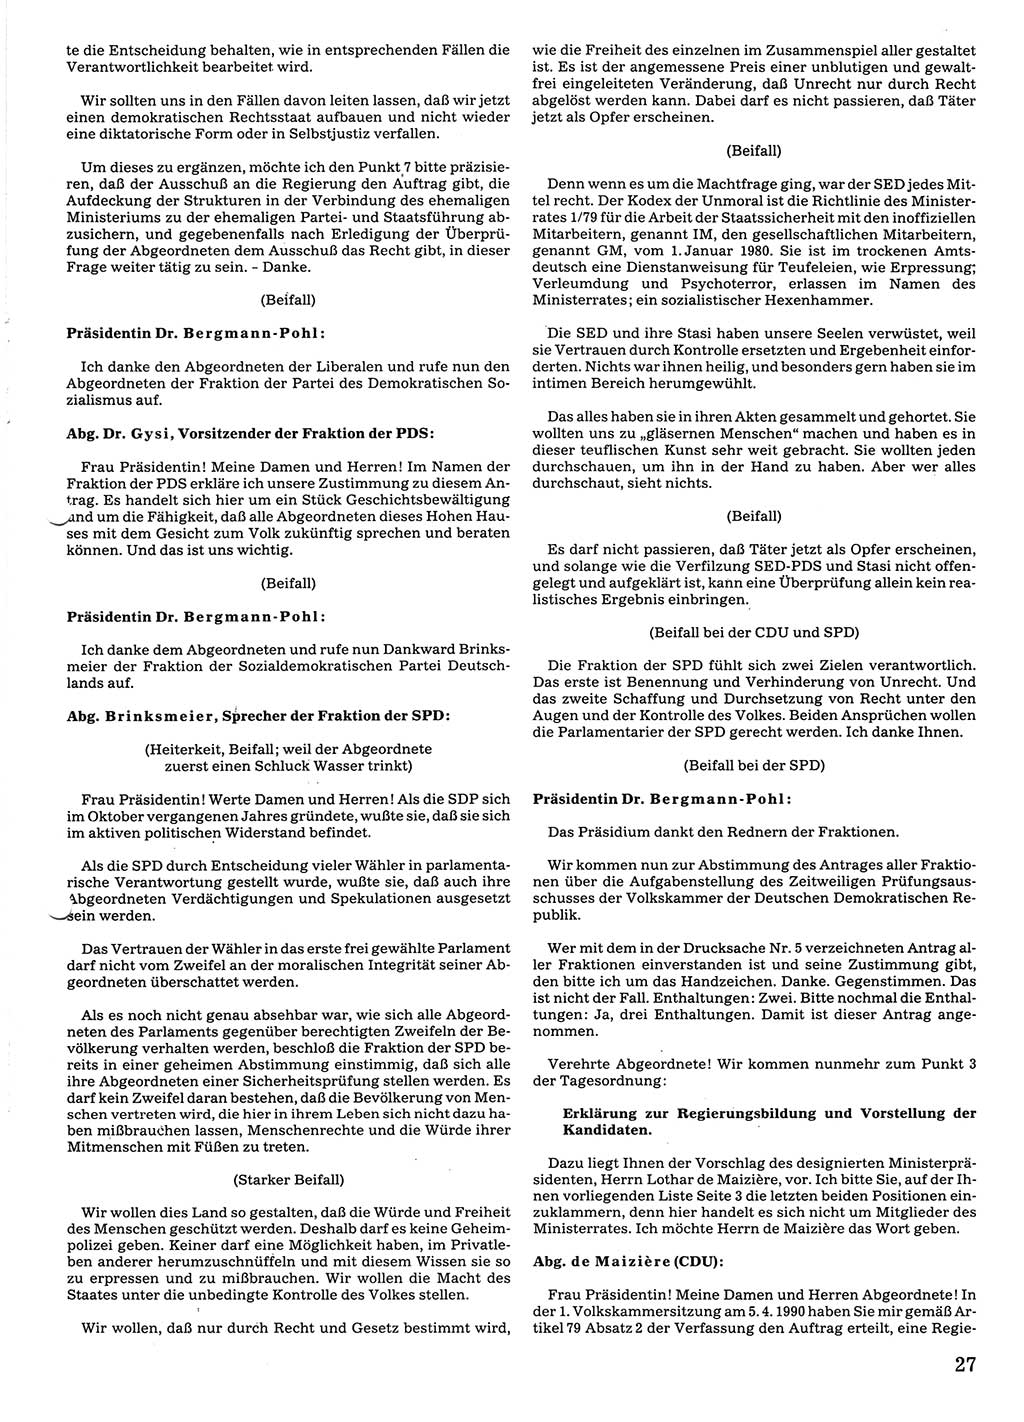 Tagungen der Volkskammer (VK) der Deutschen Demokratischen Republik (DDR), 10. Wahlperiode 1990, Seite 27 (VK. DDR 10. WP. 1990, Prot. Tg. 1-38, 5.4.-2.10.1990, S. 27)